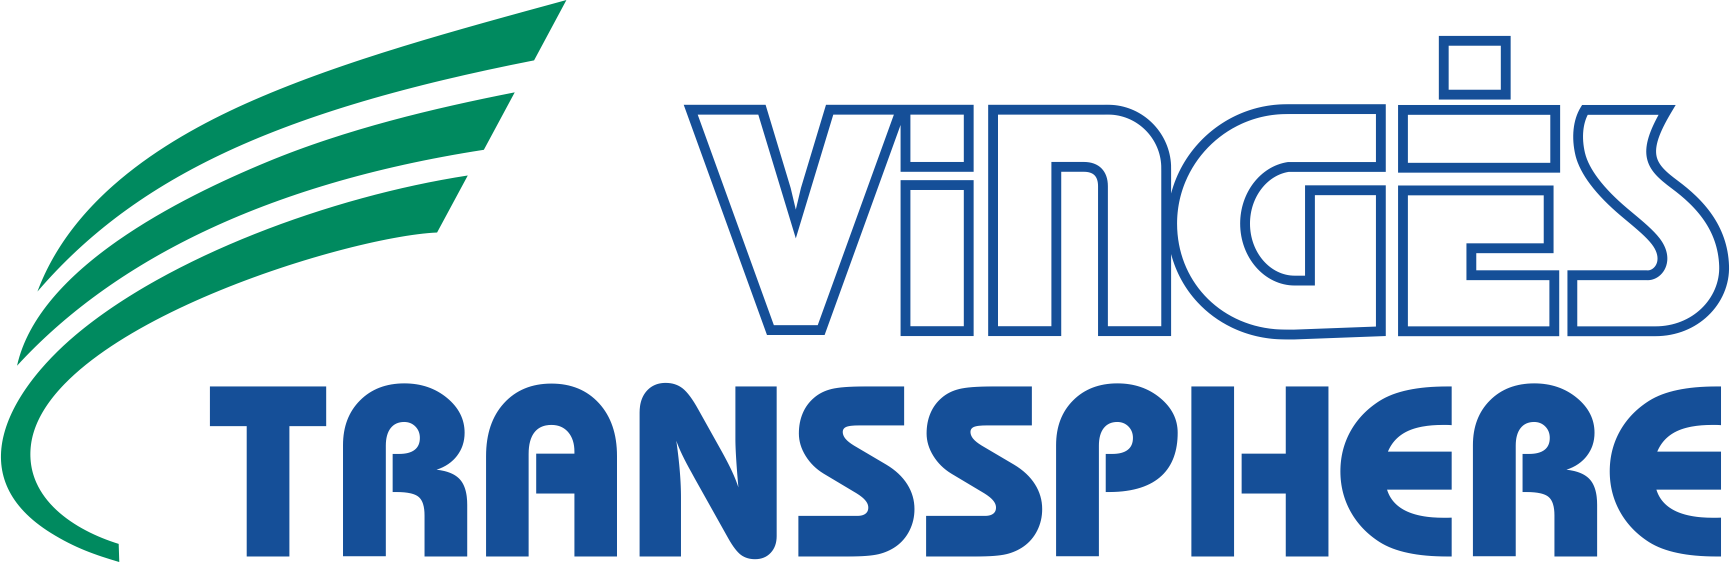 Vingės Transsphere Logistika logo